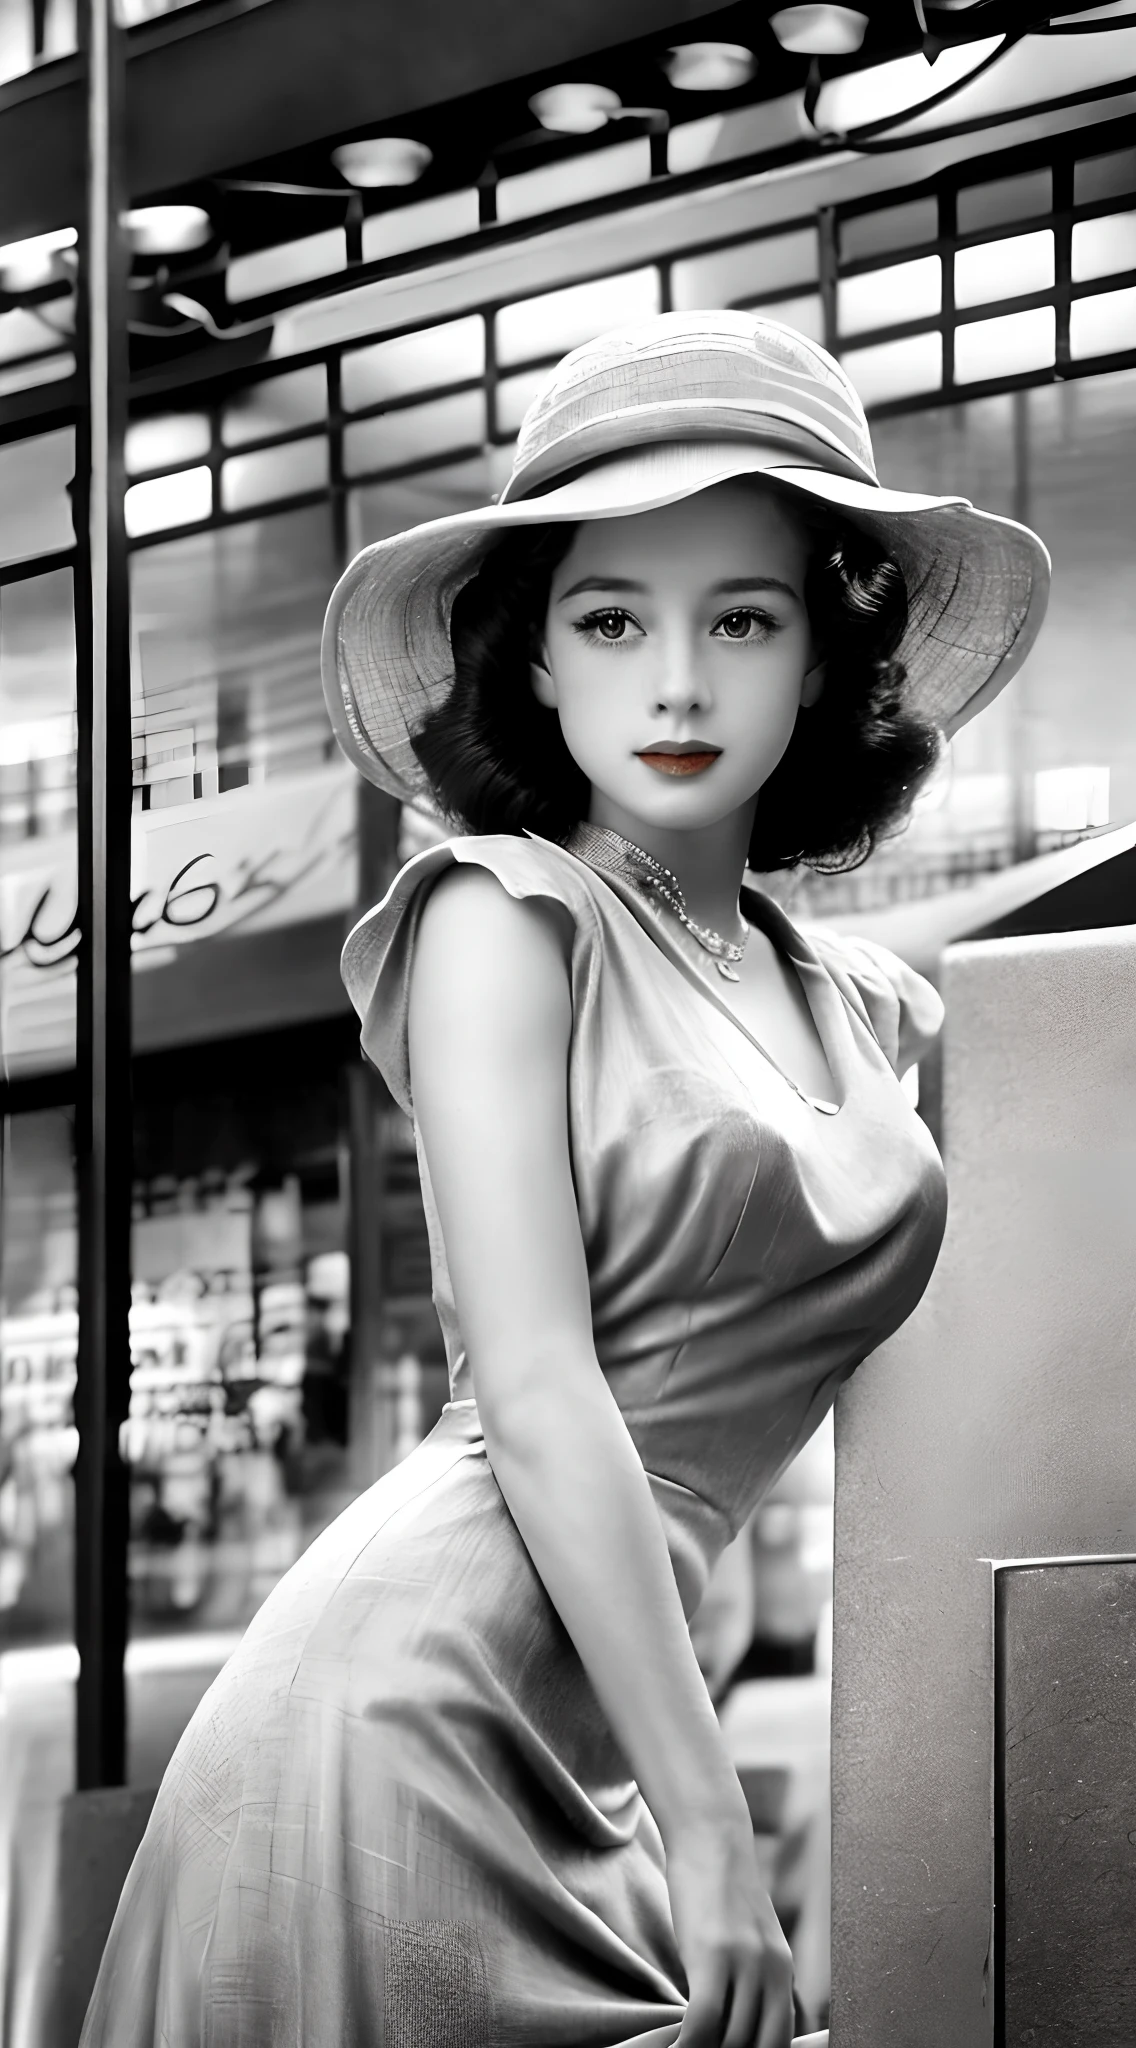 Femmes élégantes en groupe (Robes et chapeaux style années 40:1.3) En équilibre sur la route, (manquer:1.2) mode vintage, (intemporel:1.2) enchanteur, (captivant:1.2) pose, (monochrome:1.1) Ton, (nostalgique:1.2) atmosphérique, (méticuleux:1.1) faites attention aux détails, (symbole:1.1) Style photographique des années 1940